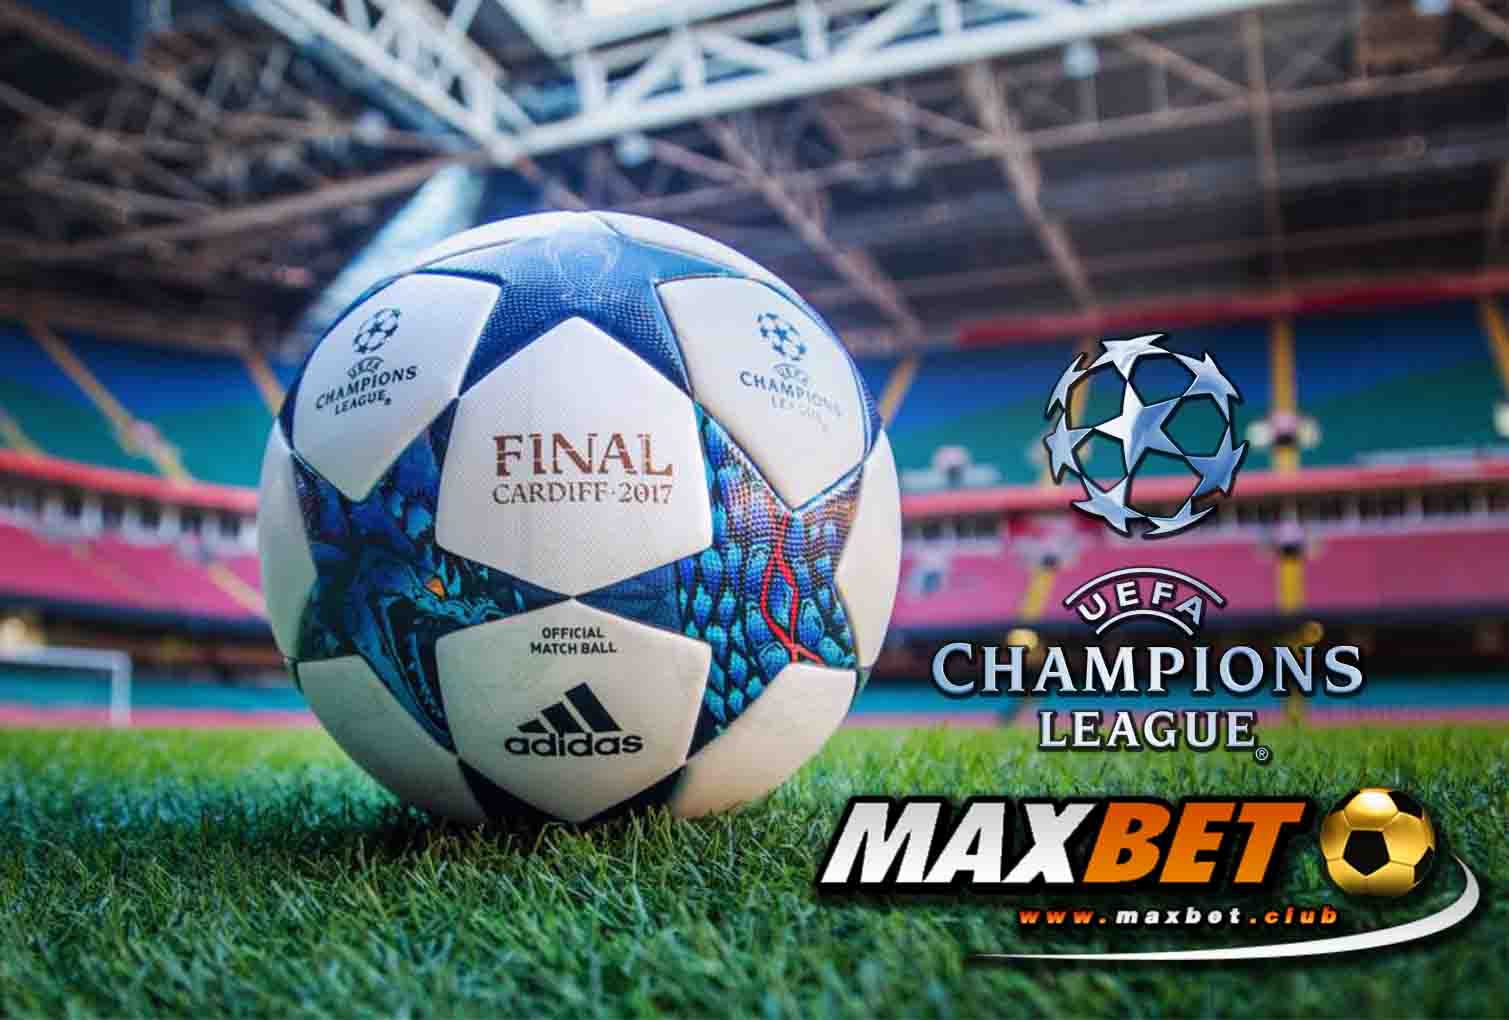 promotion-maxbet-uefa